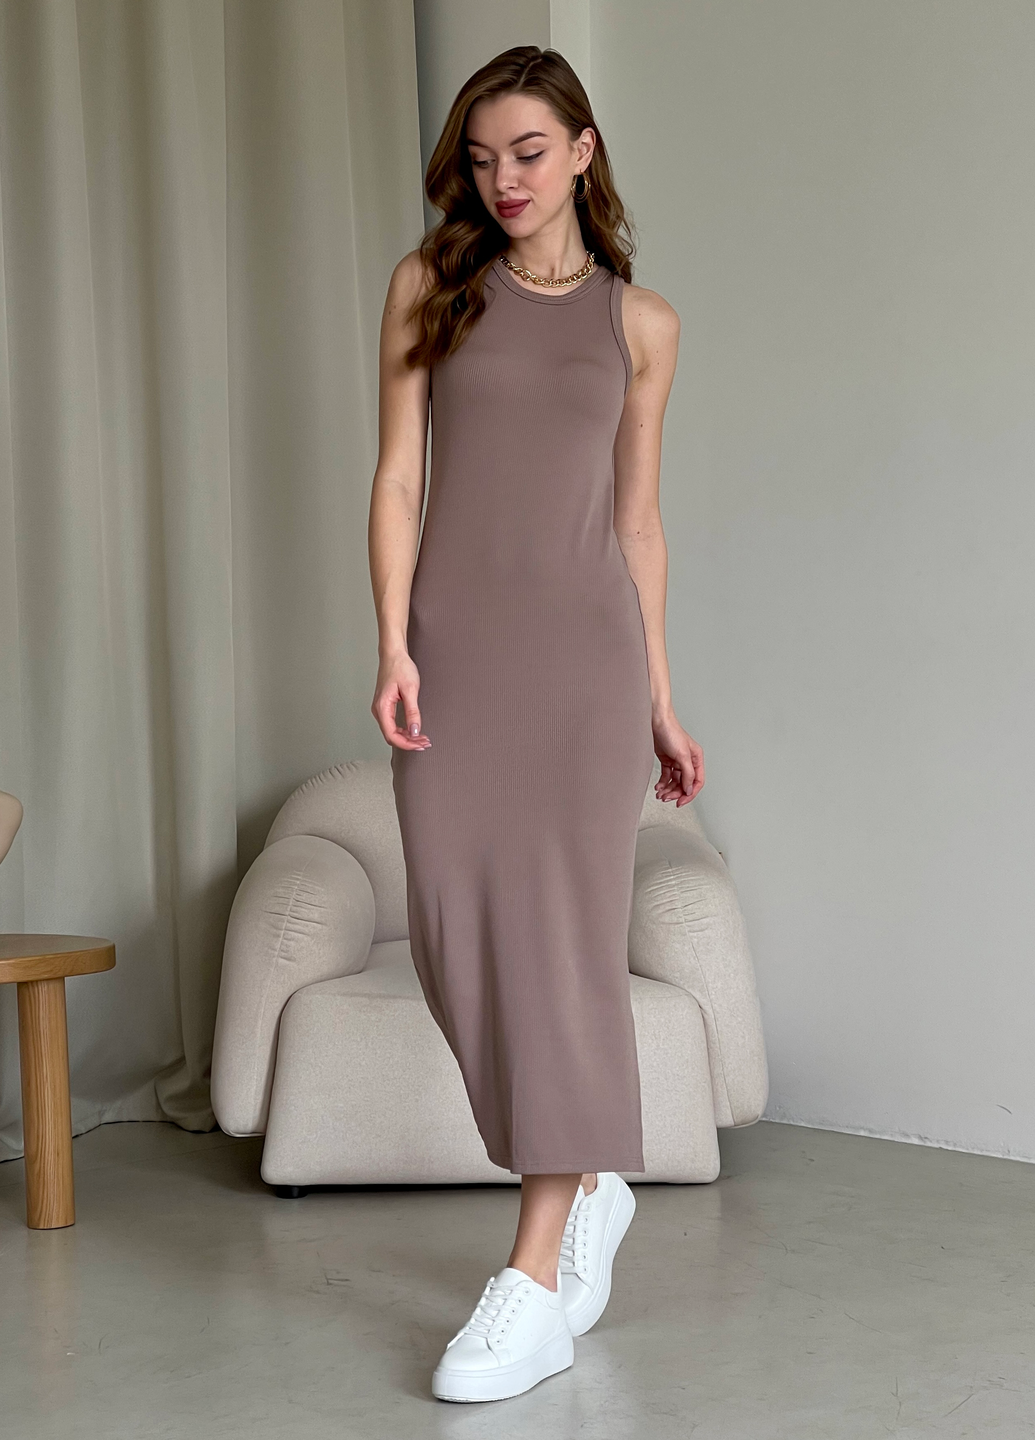 Купить Длинное платье-майка в рубчик цвета мокко Merlini Лонга 700000104 размер 42-44 (S-M) в интернет-магазине